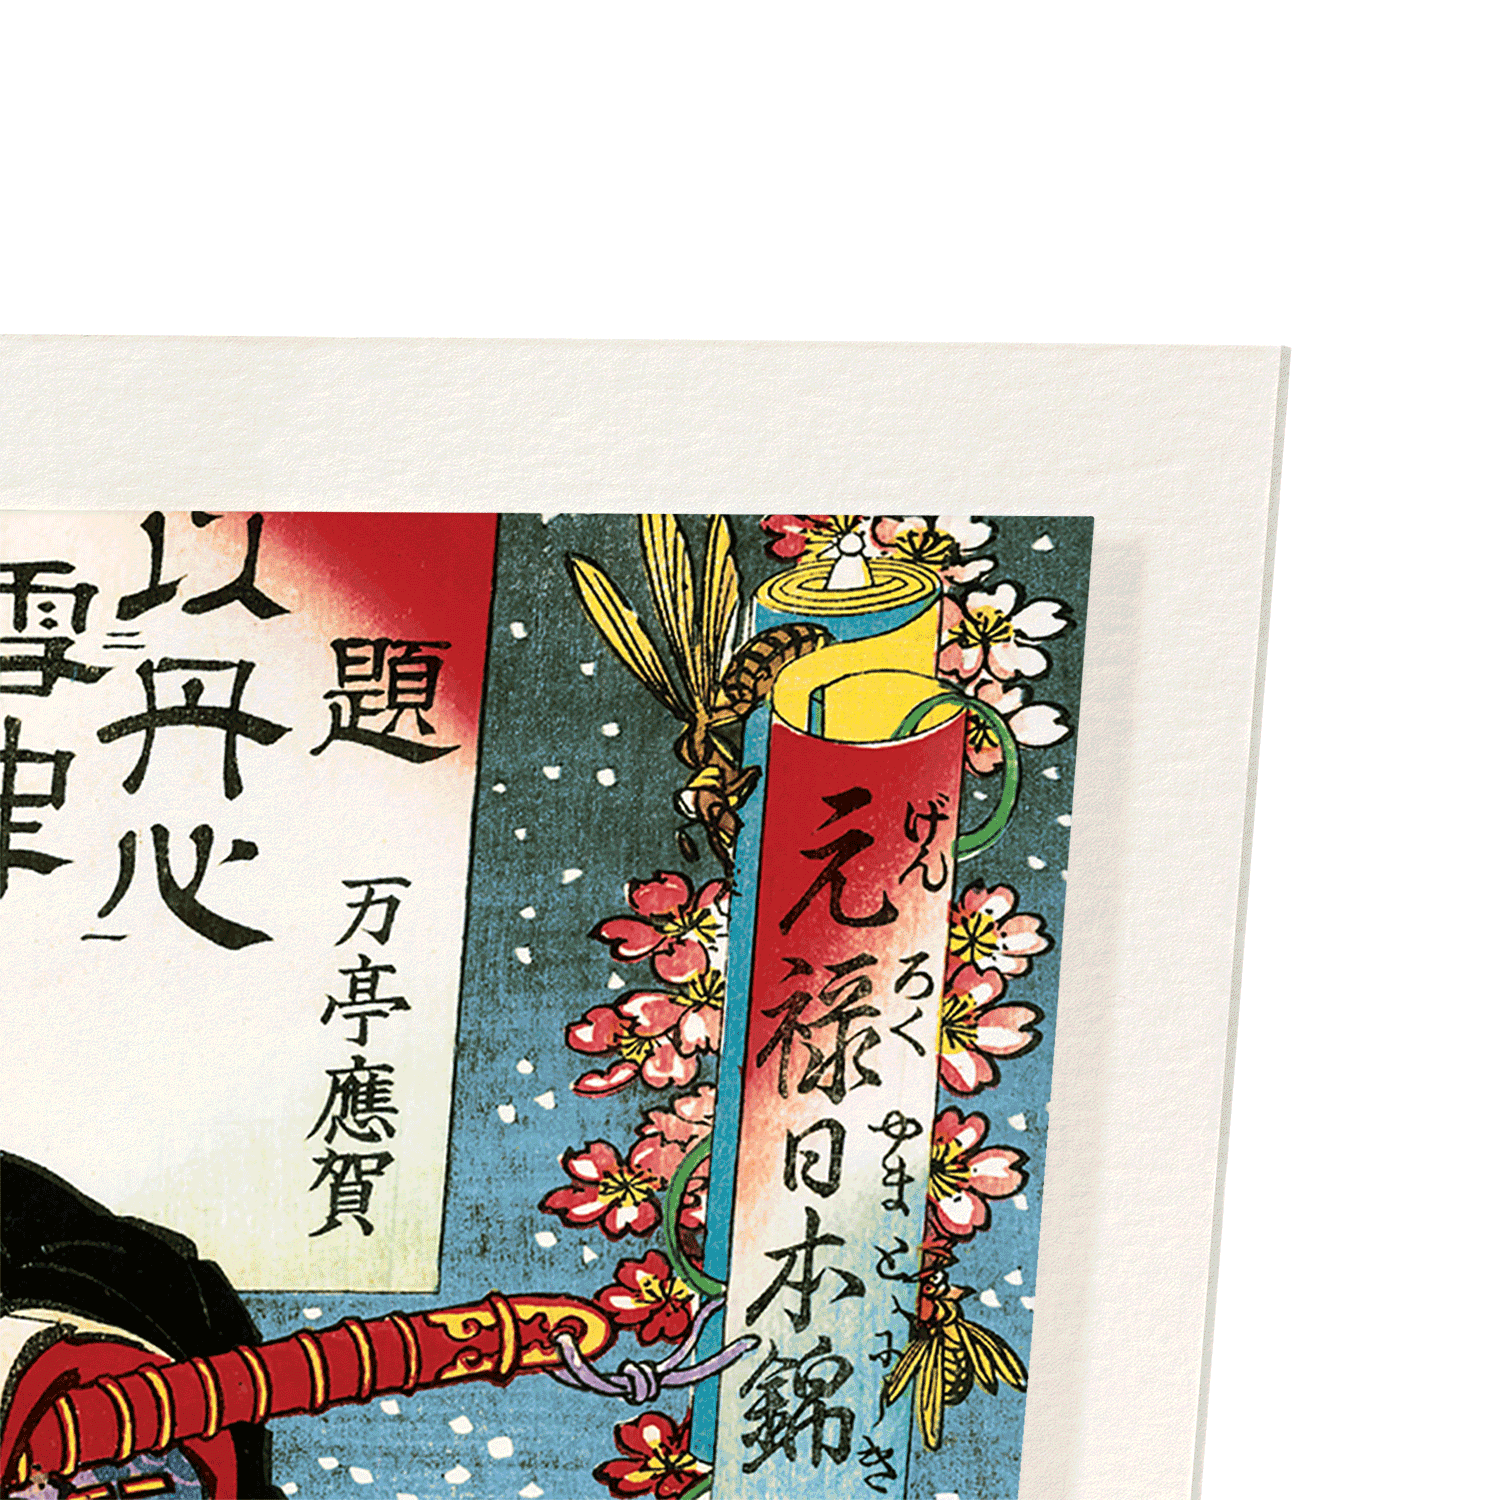 HORIBE YASUBEI TAKETSUNE (1886): Japanese Art Print